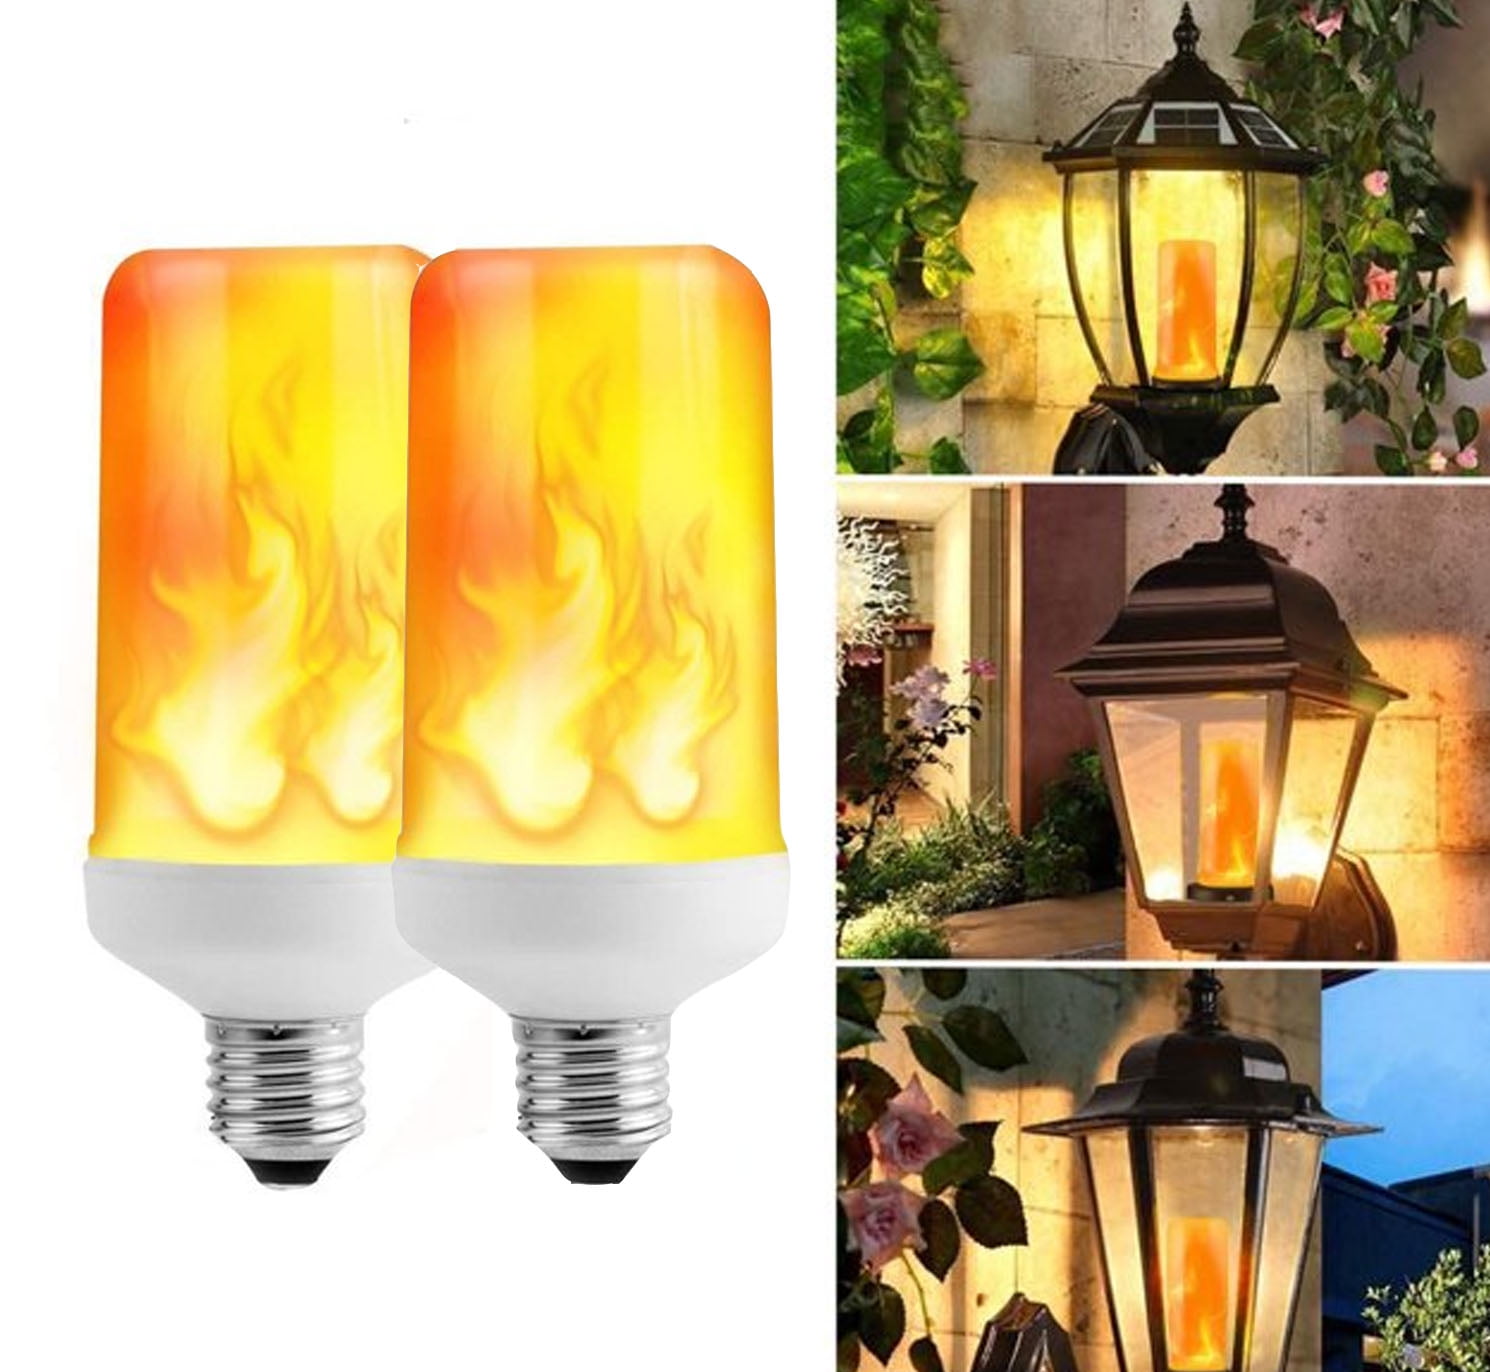 E27 Led Flicker Flame Light Bulb Simulated Burning Fire Effect Decor Lamp 120V 